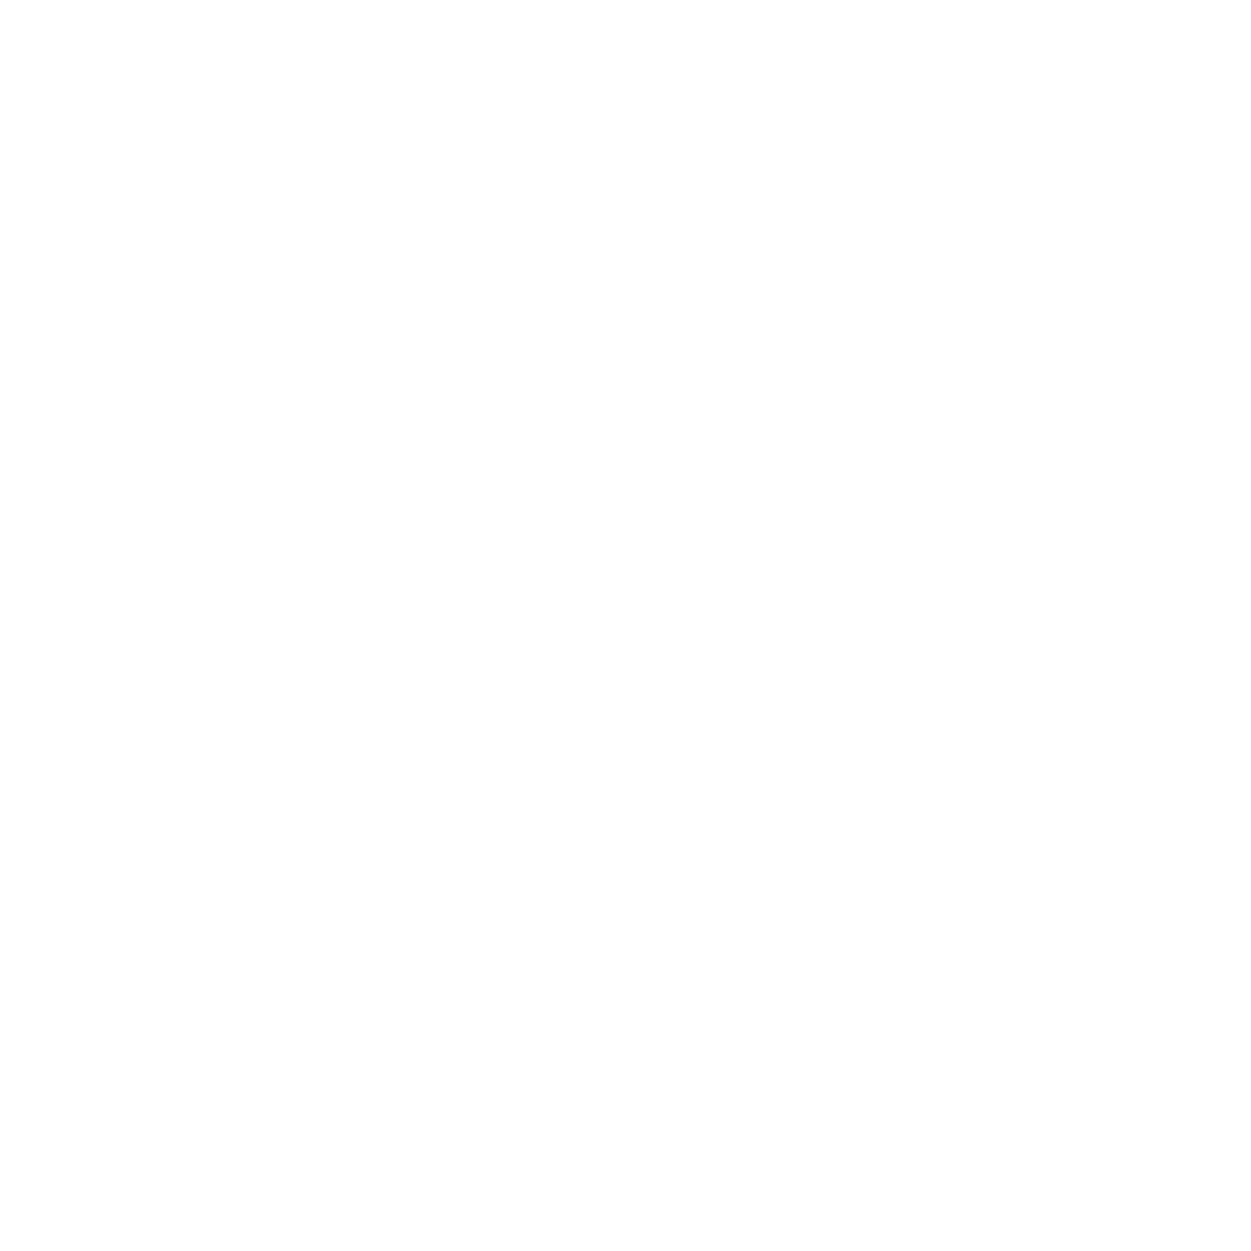 JEÛNE, DETOX & RANDONNEE - Séjours et Cures Jeûne et Détox